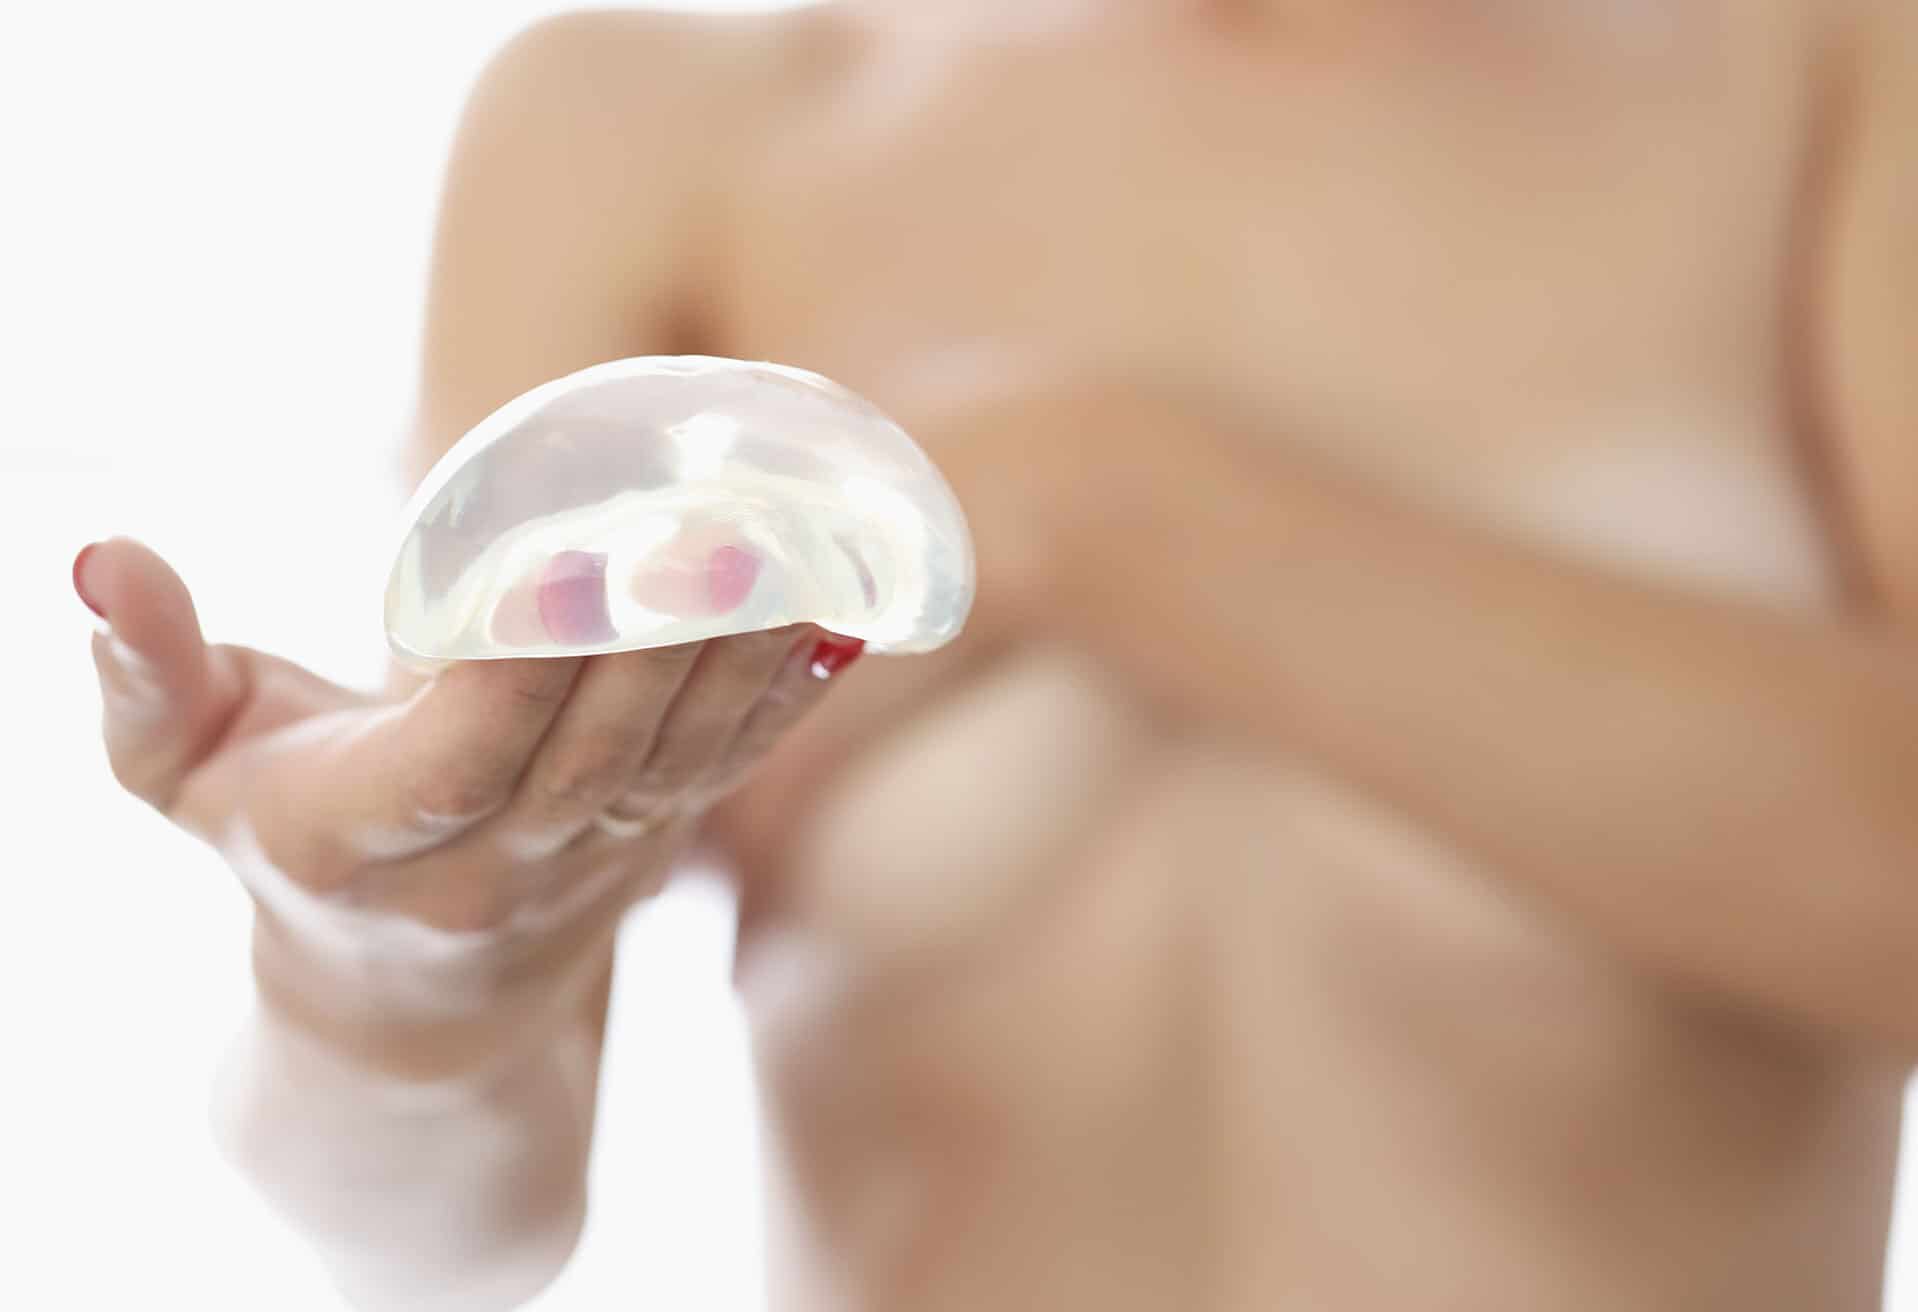 Amélioration prothèses mammaires | Paris | L'Institut Du Sein Paris